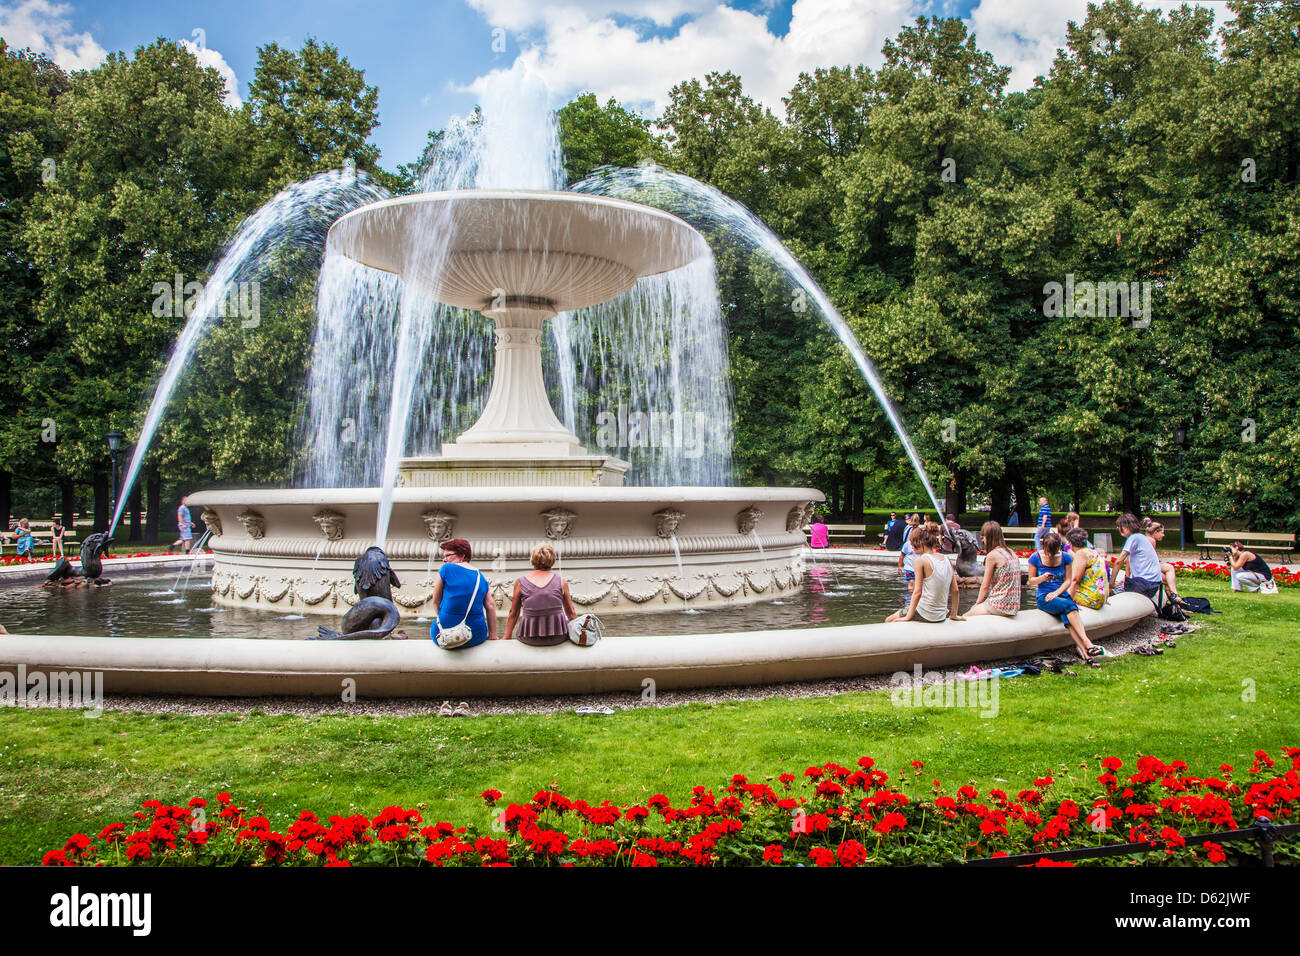 Menschen "cooling off" rund um den Brunnen in Ogród Saski, sächsische Garten, dem ältesten öffentlichen Park in Warschau, Polen. Stockfoto